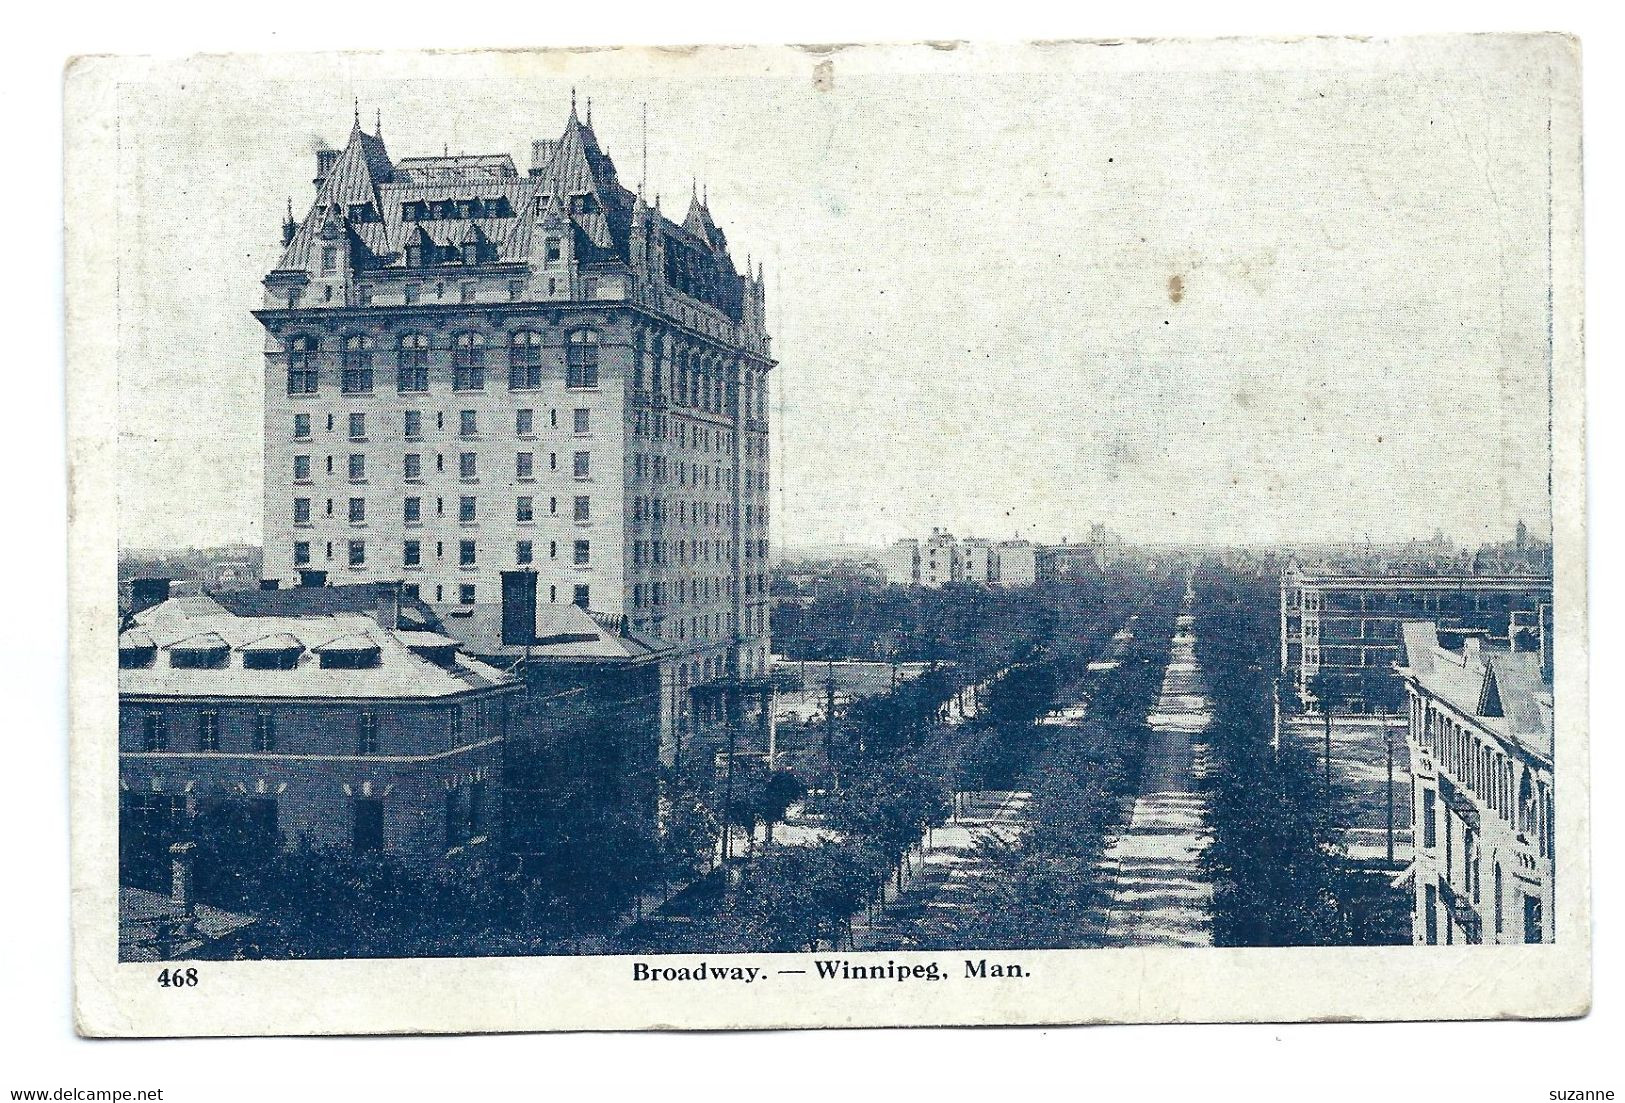 WINNIPEG MAN - Broadway - Winnipeg